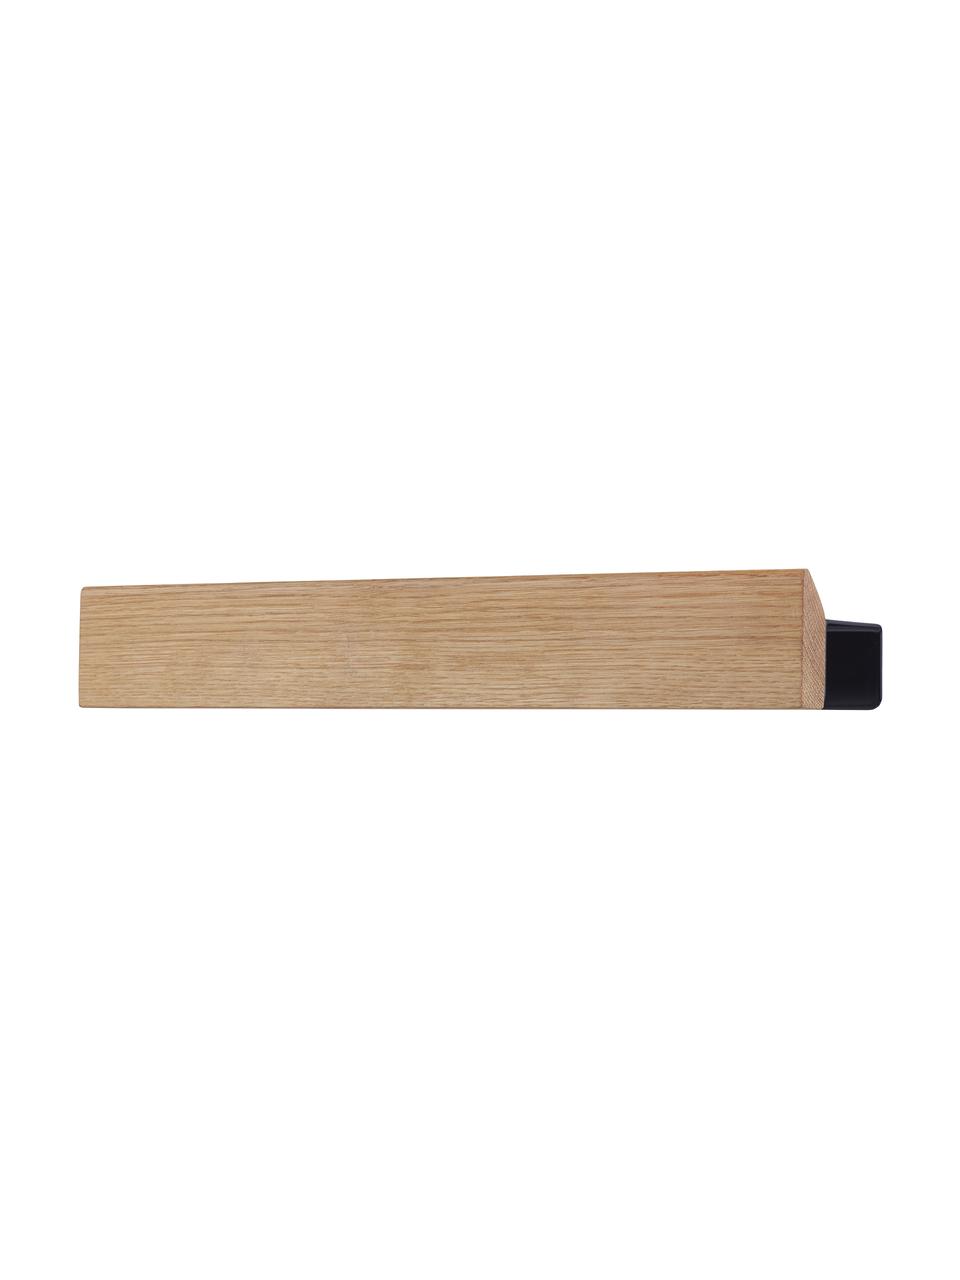 Magnetická lišta Flex, Světlé dřevo, černá, Š 40 cm, V 6 cm